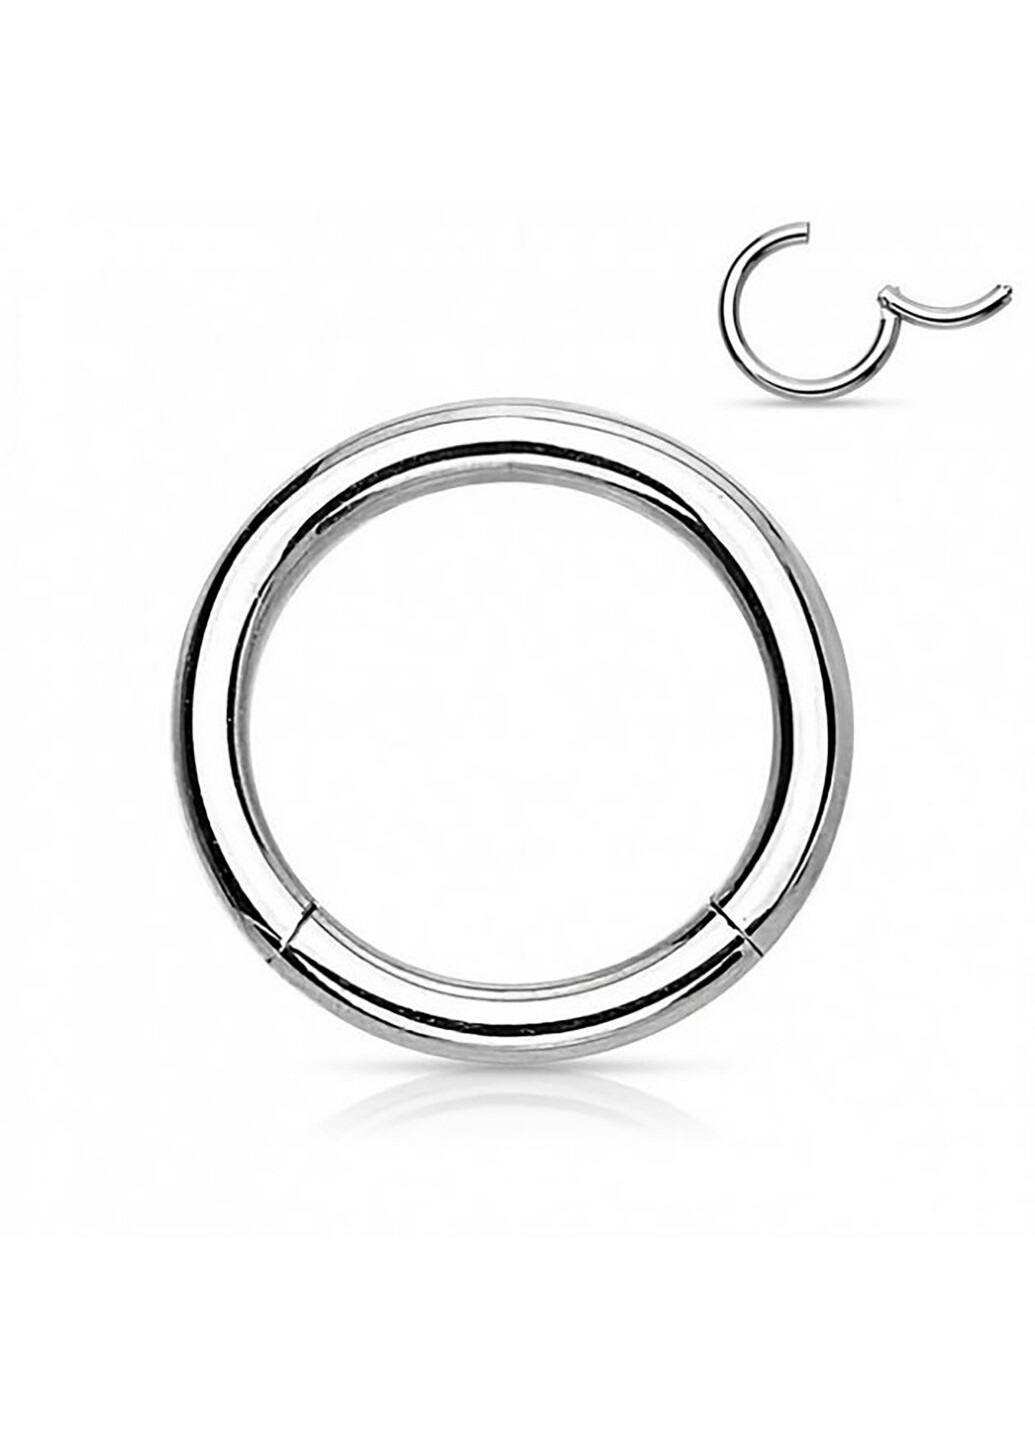 Универсальное кольцо - кликер из стали бренда PiercedFish диаметром 16 мм, толщиной 1,2 мм Spikes (257898142)